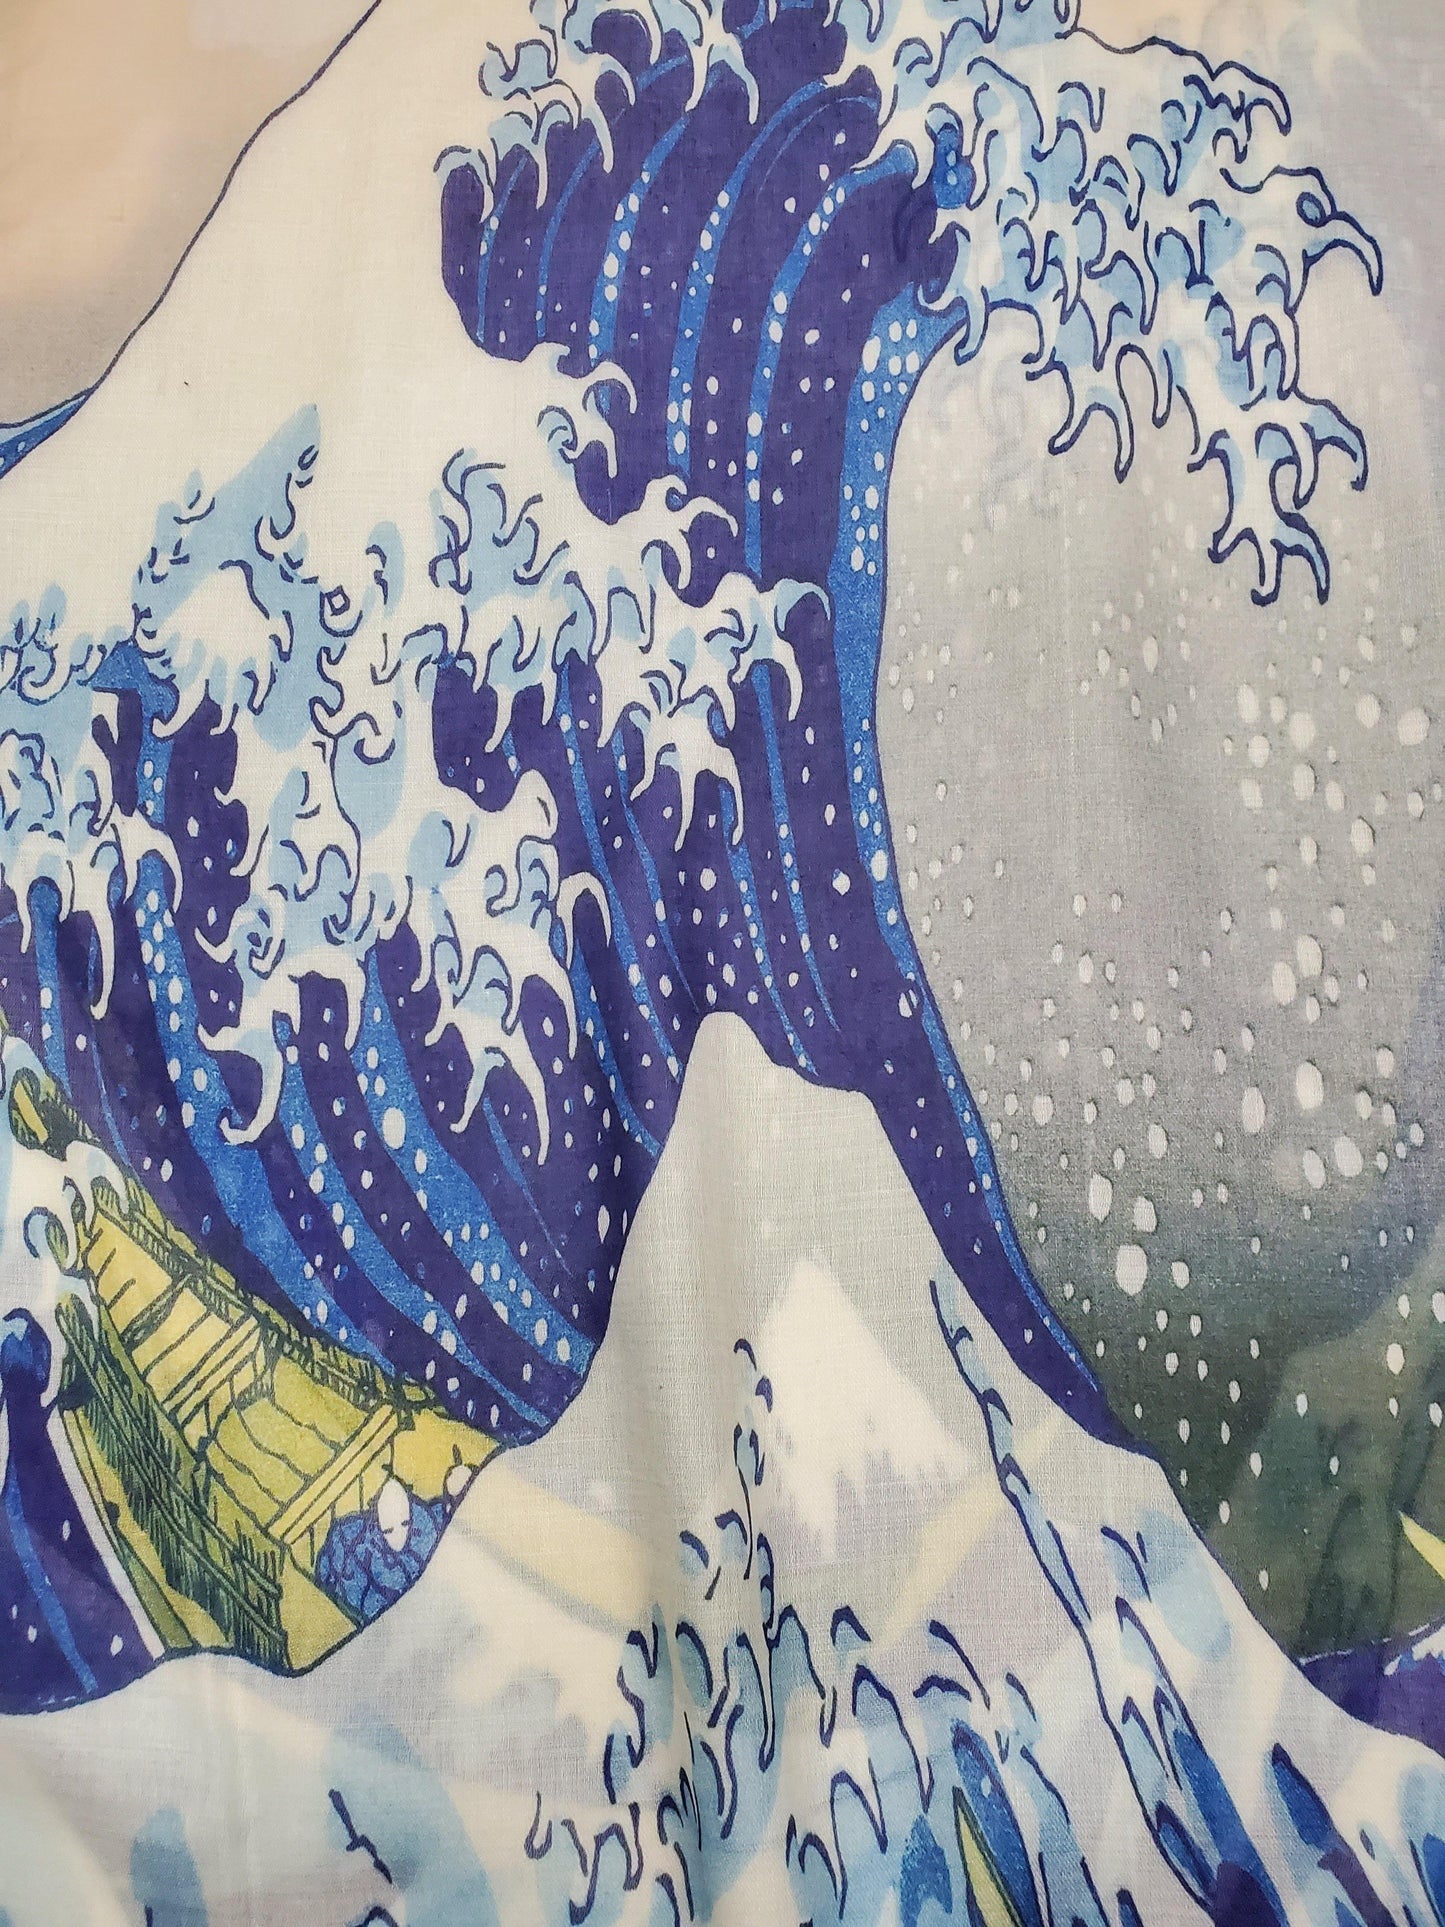 Bavlnený Šál-šatka, 70 cm x 180 cm, Hokusai - Veľká vlna - KlenotTV.sk